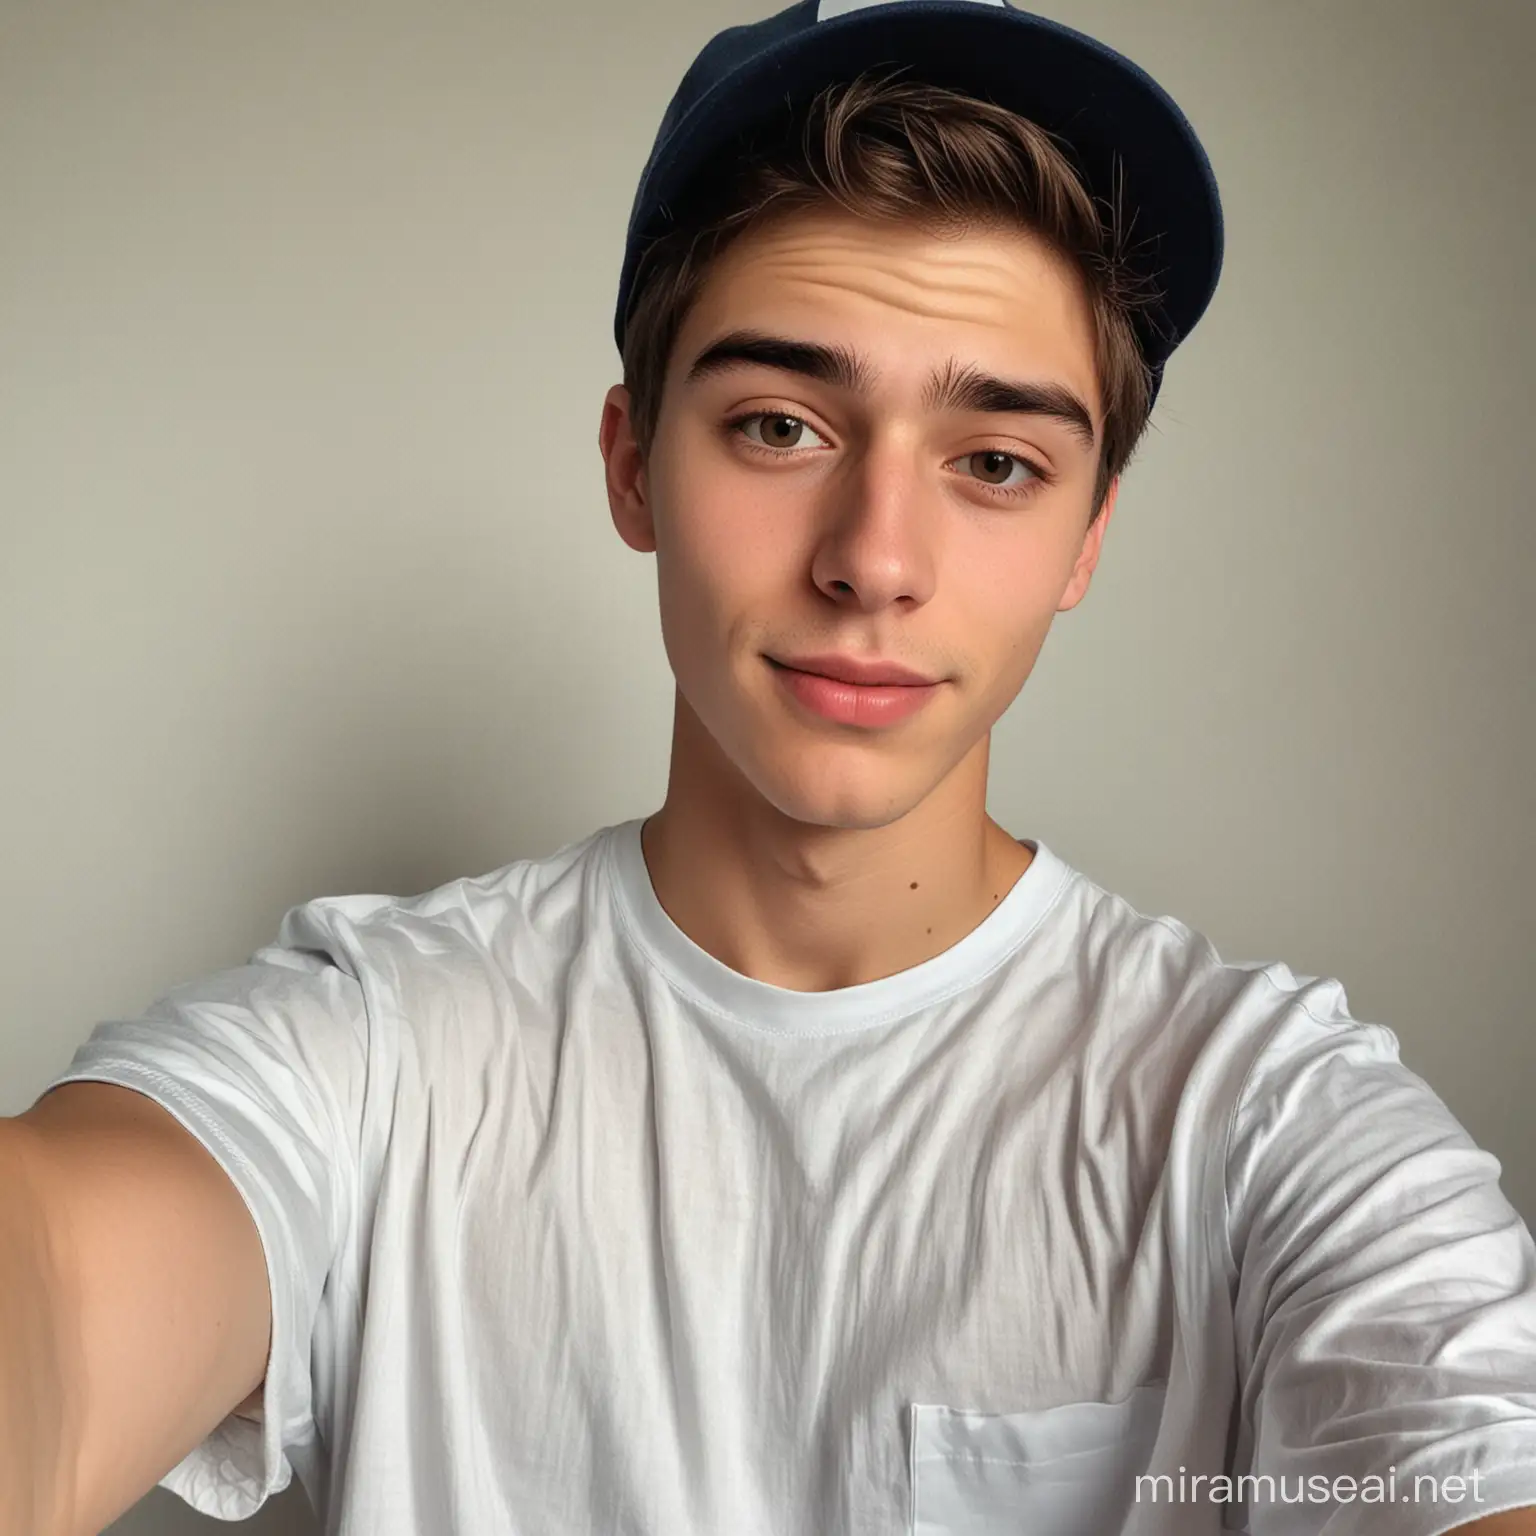 Stylish Teen Guy in Cap Taking a Selfie